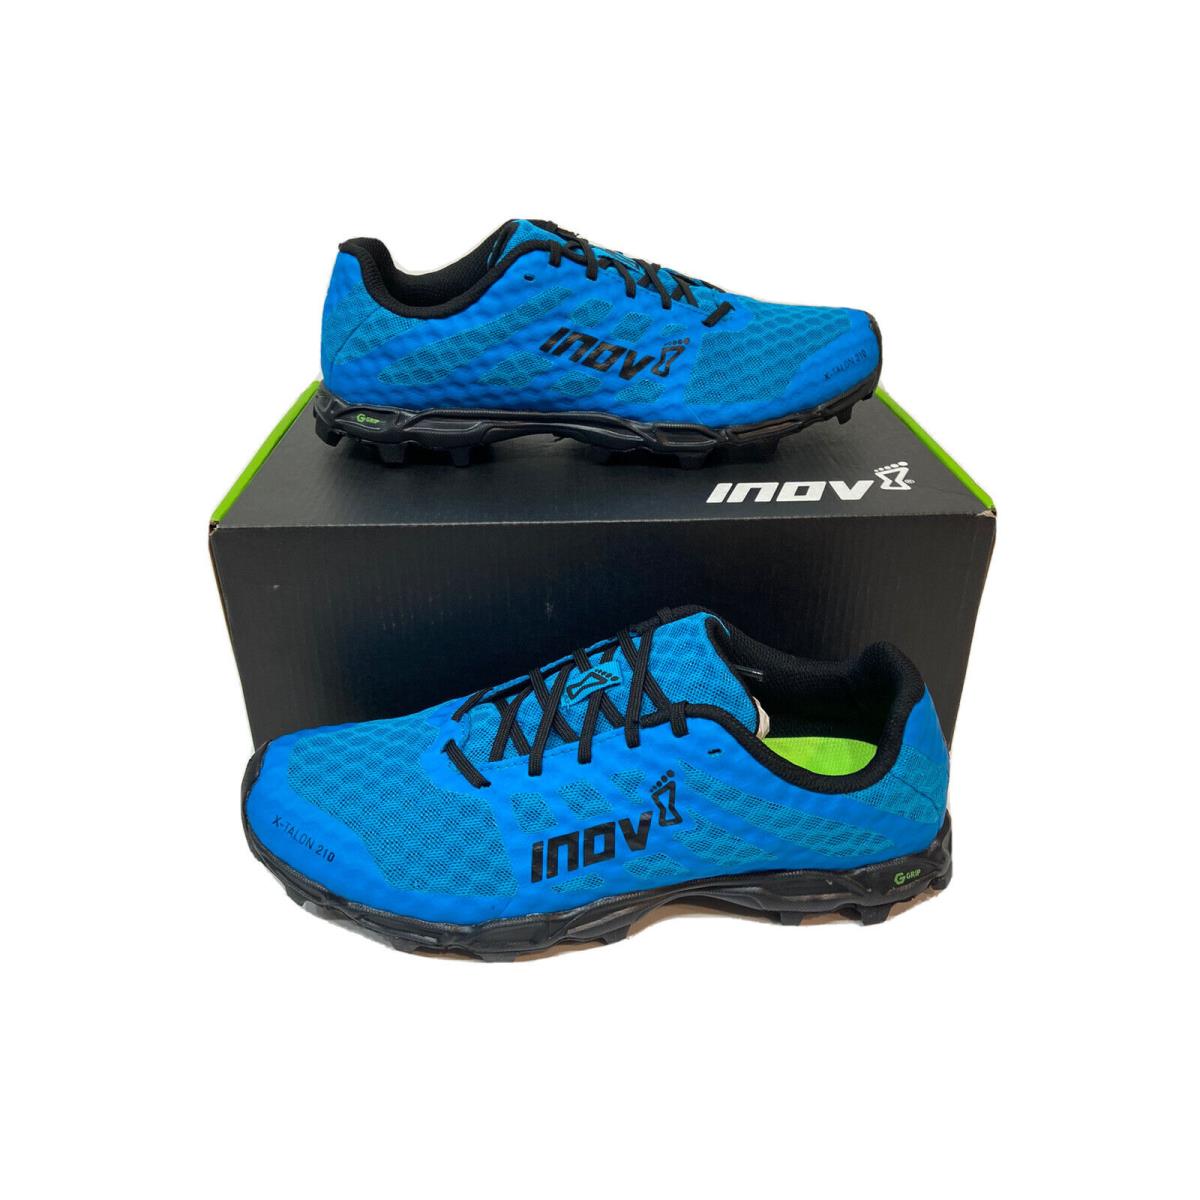 Inov-8 Inov8 X-talon G 210 Mens Trail Running Shoes Size US 8 EU 40.5 Blue Black